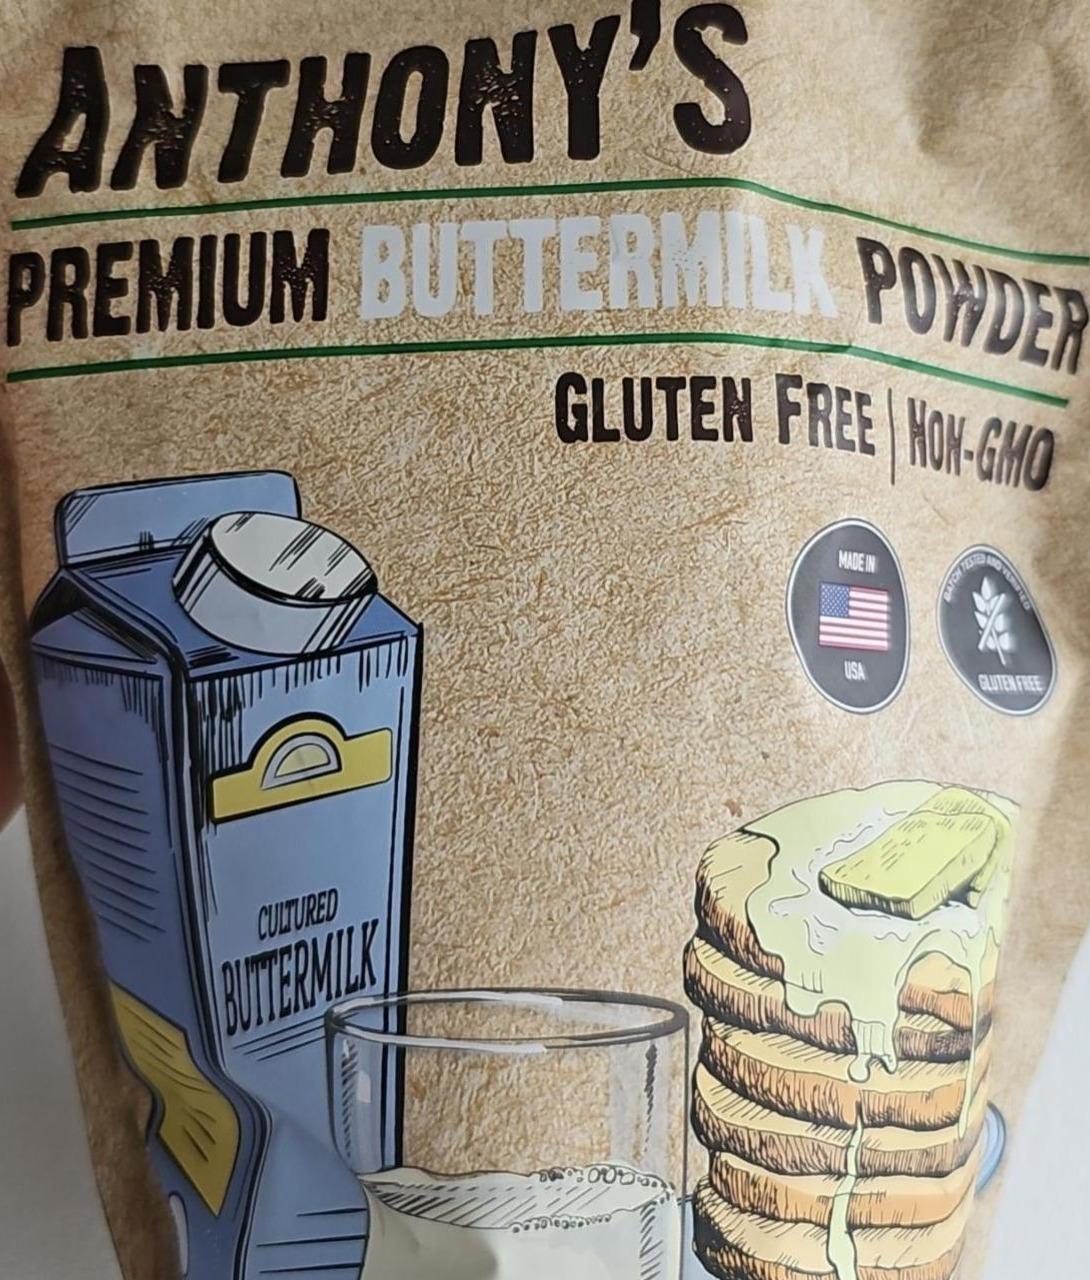 Фото - Premium buttermilk powder Anthony's